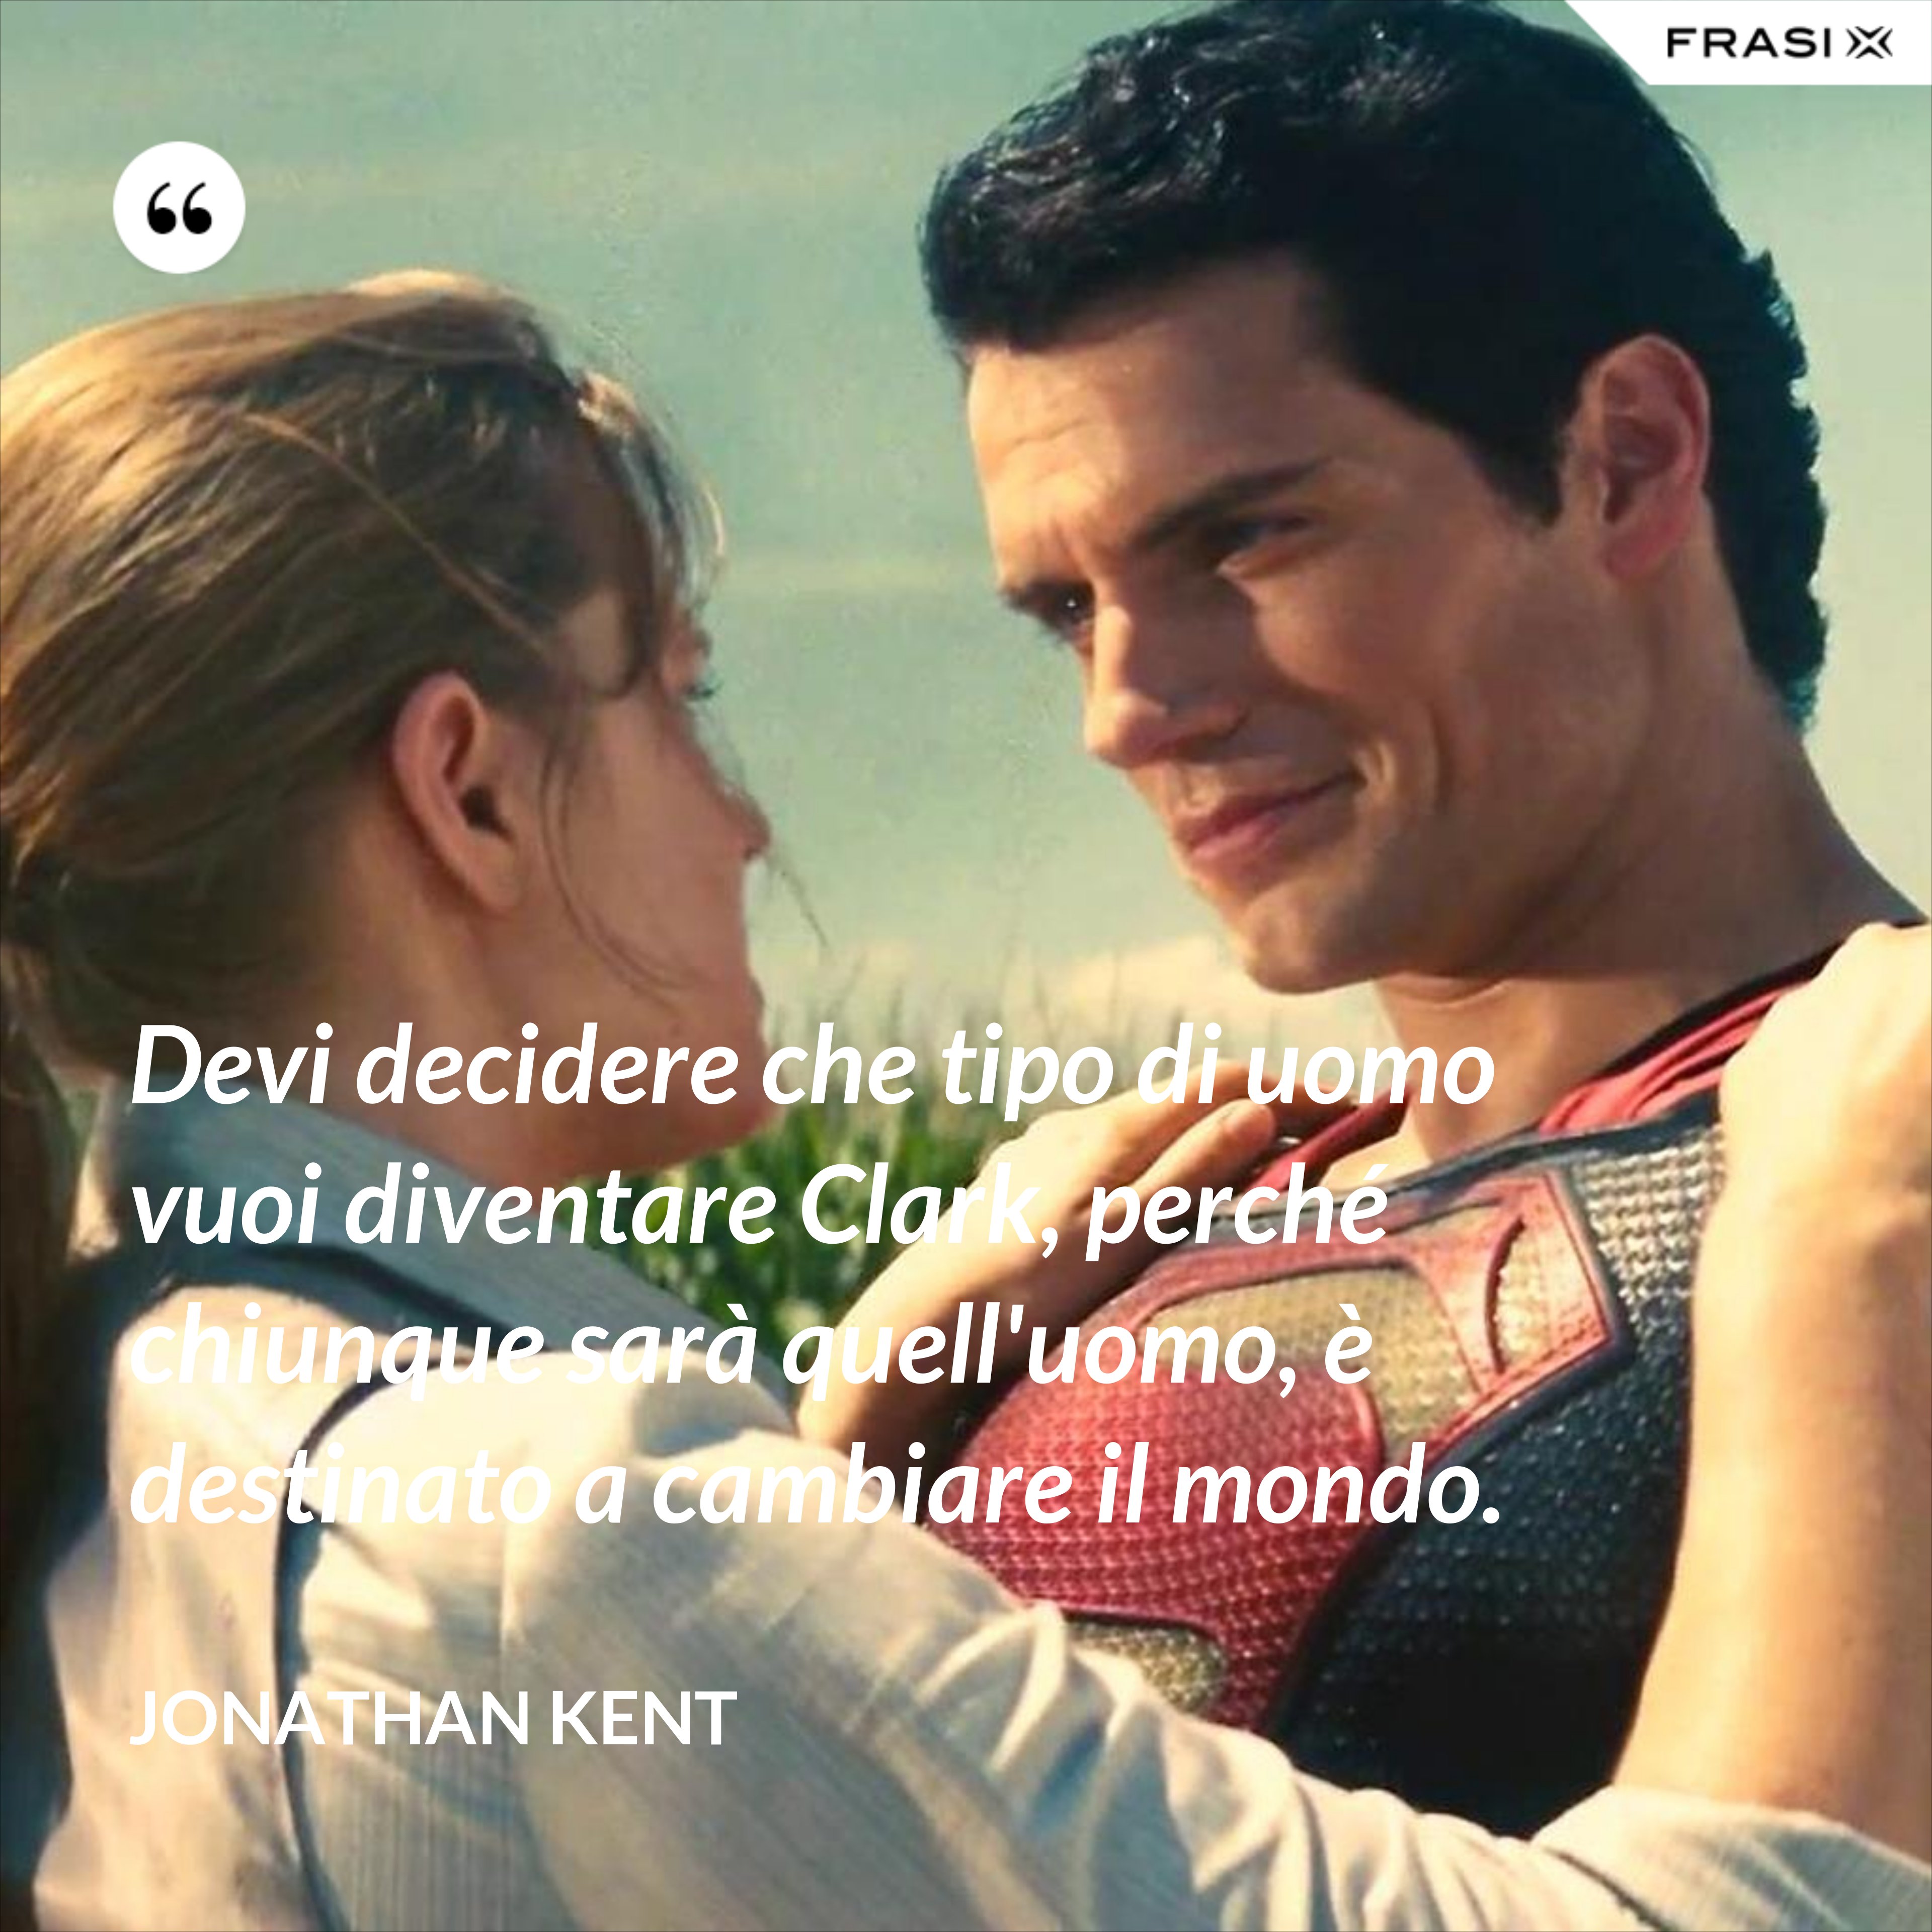 Devi decidere che tipo di uomo vuoi diventare Clark, perché chiunque sarà quell'uomo, è destinato a cambiare il mondo. - Jonathan Kent